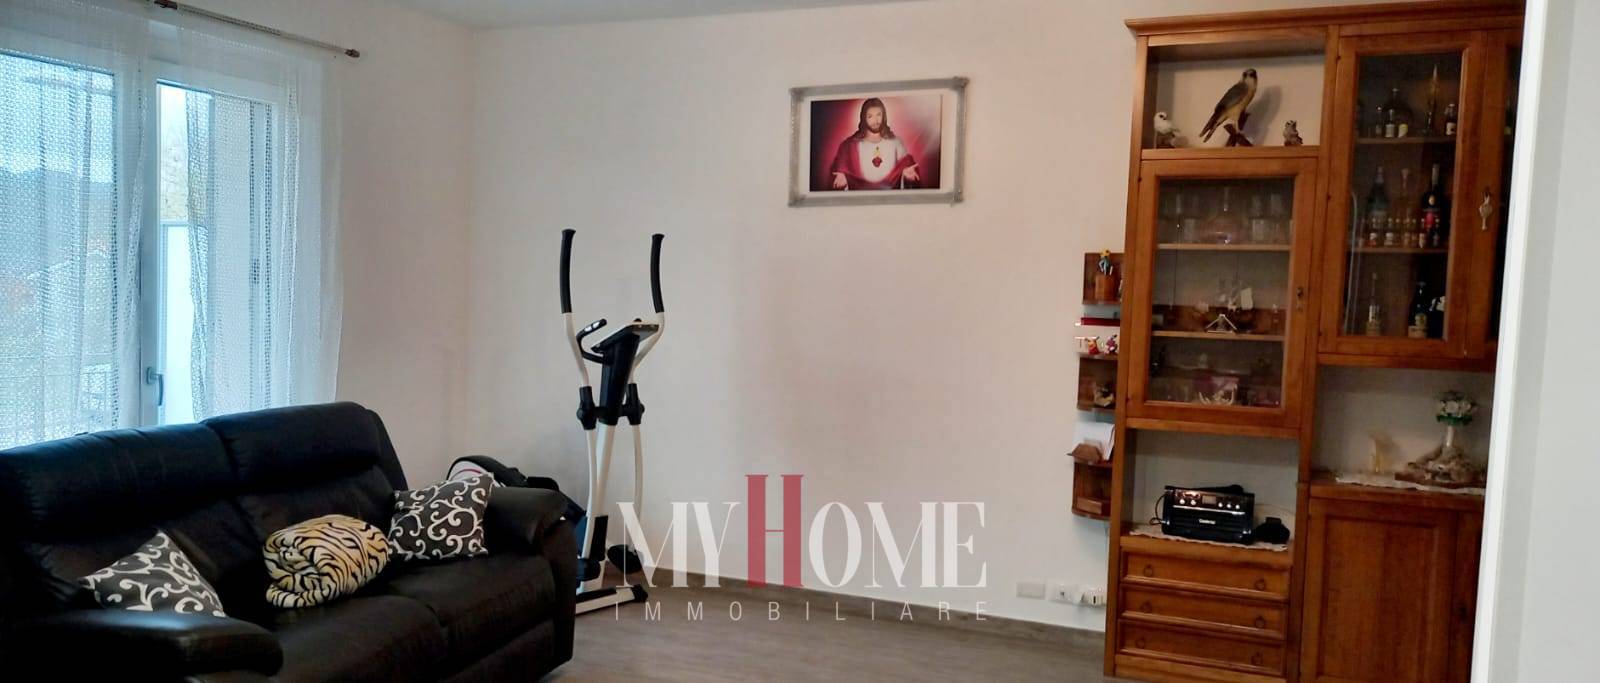 Appartamento in vendita a Comunanza, 6 locali, prezzo € 230.000 | PortaleAgenzieImmobiliari.it